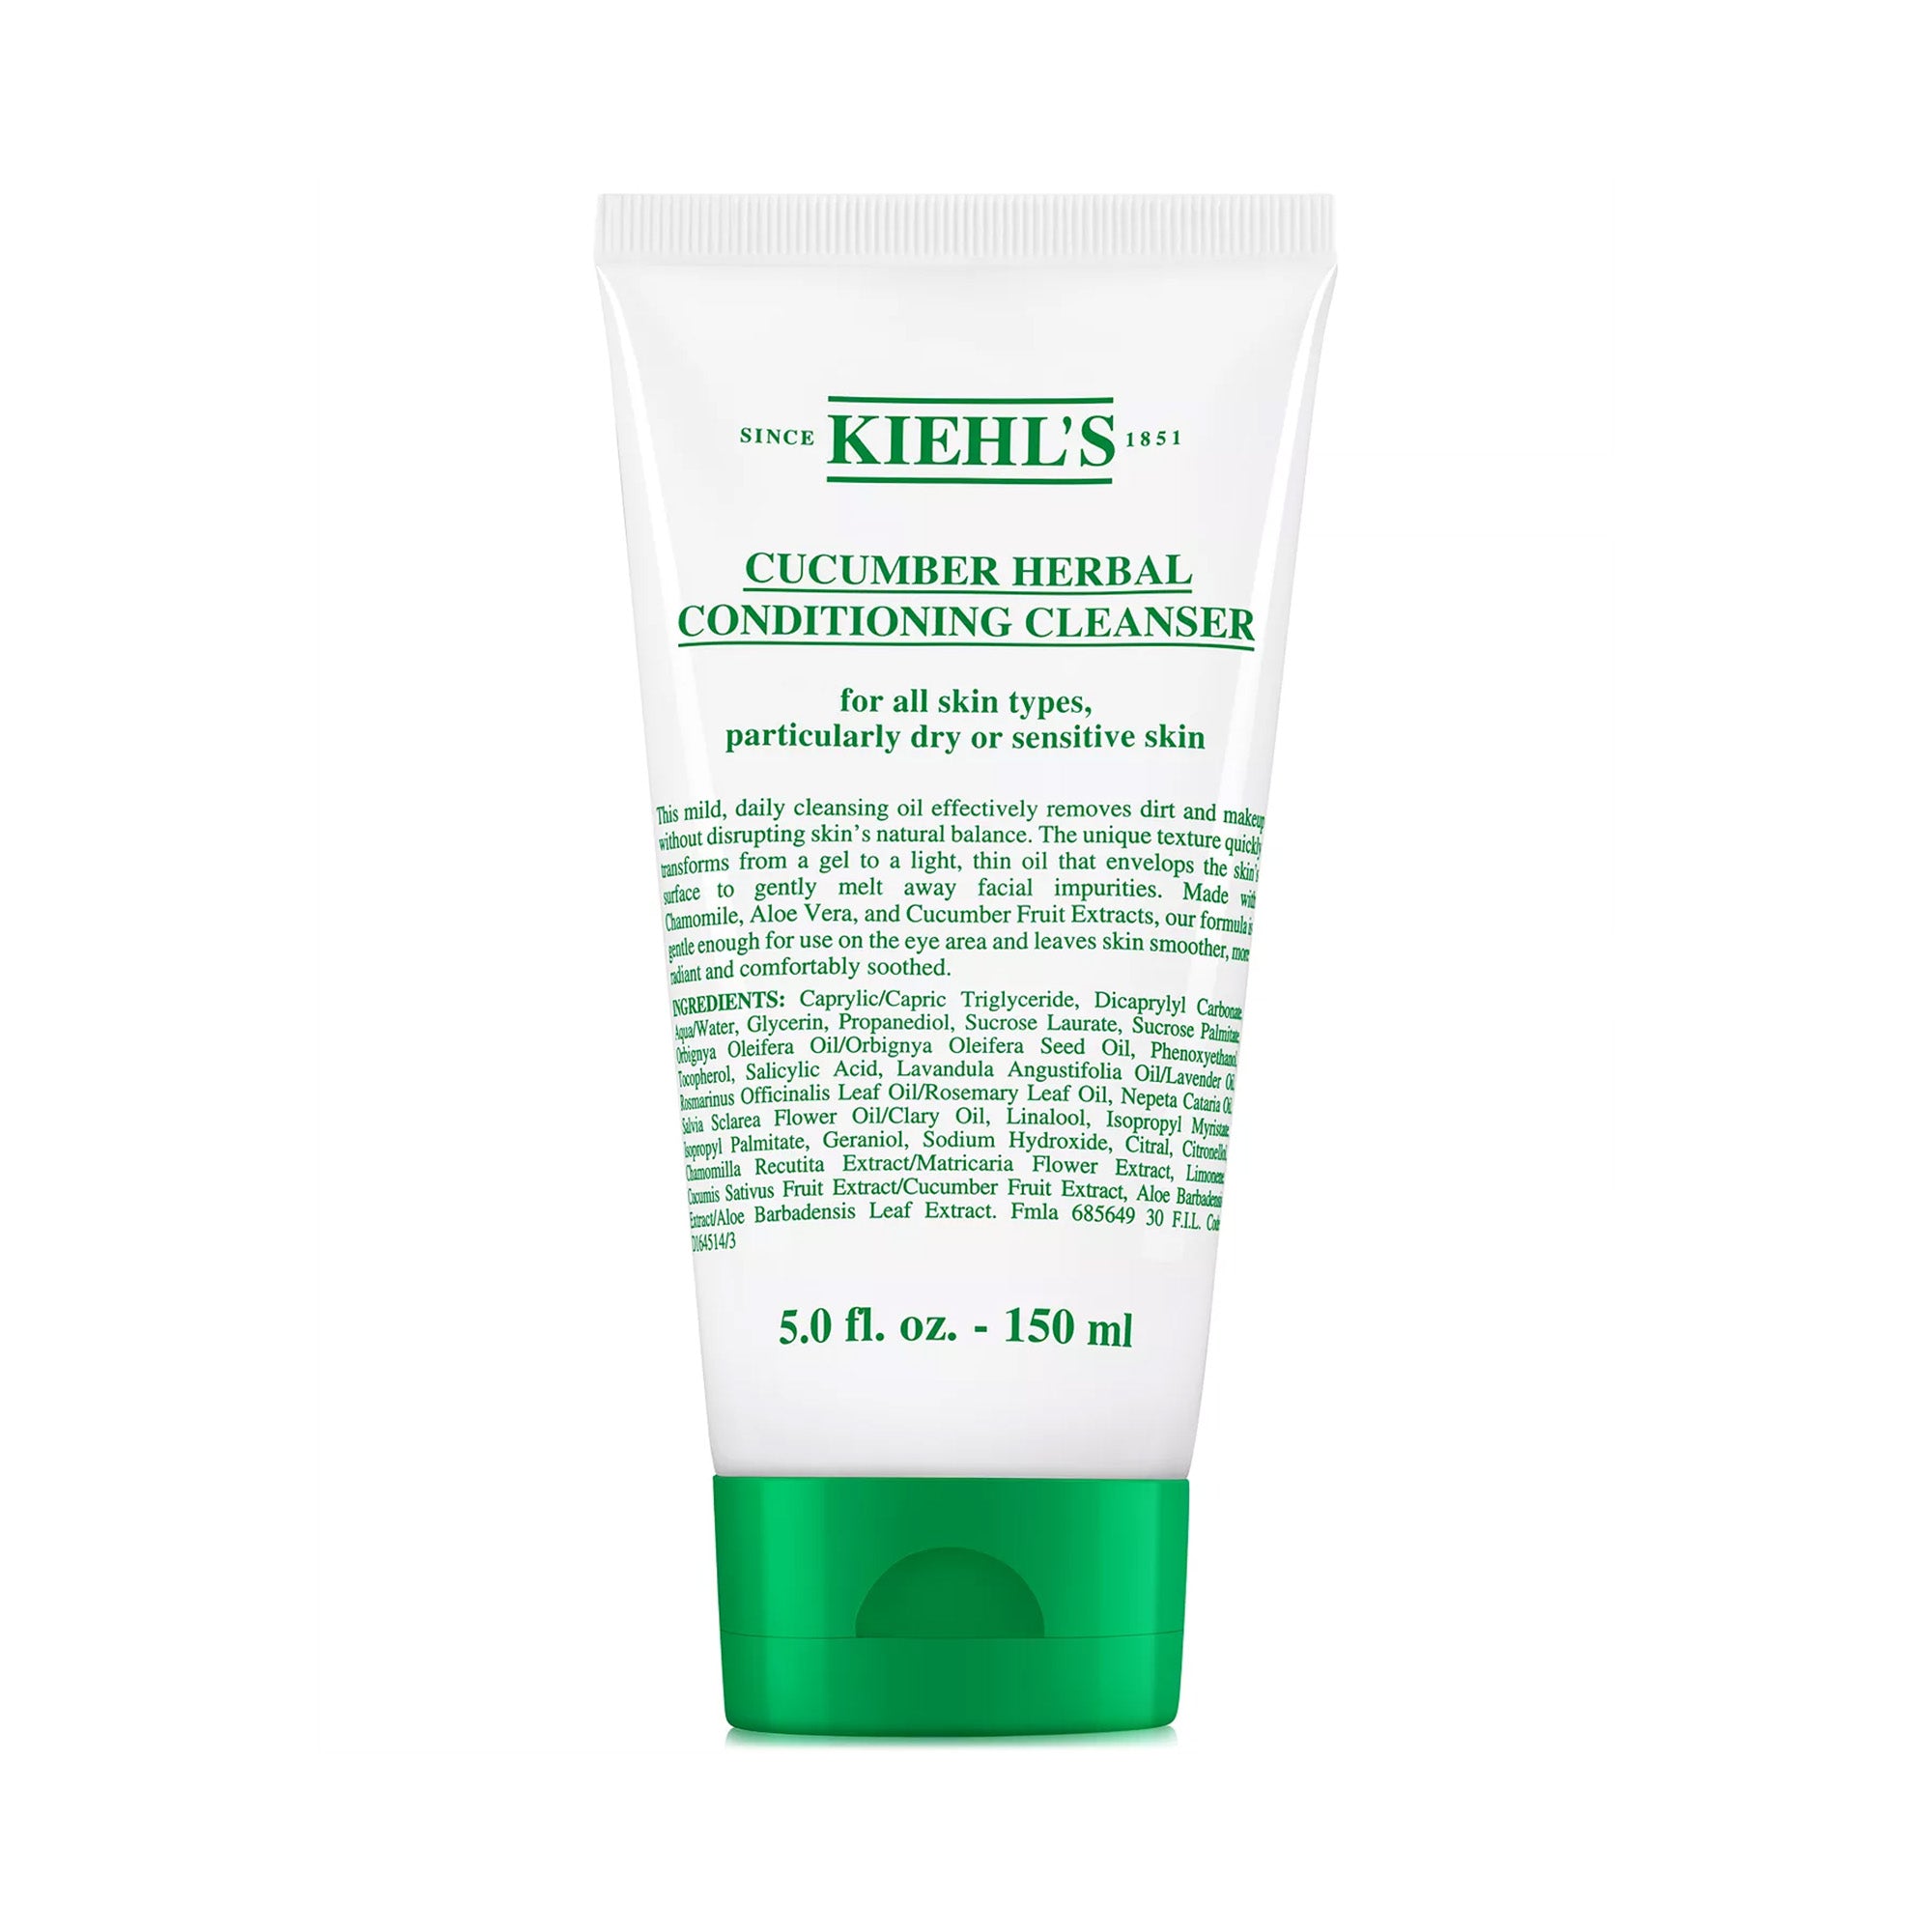 Kiehl's Kiehl's Ultra Facial Cleanser - 5 fl oz